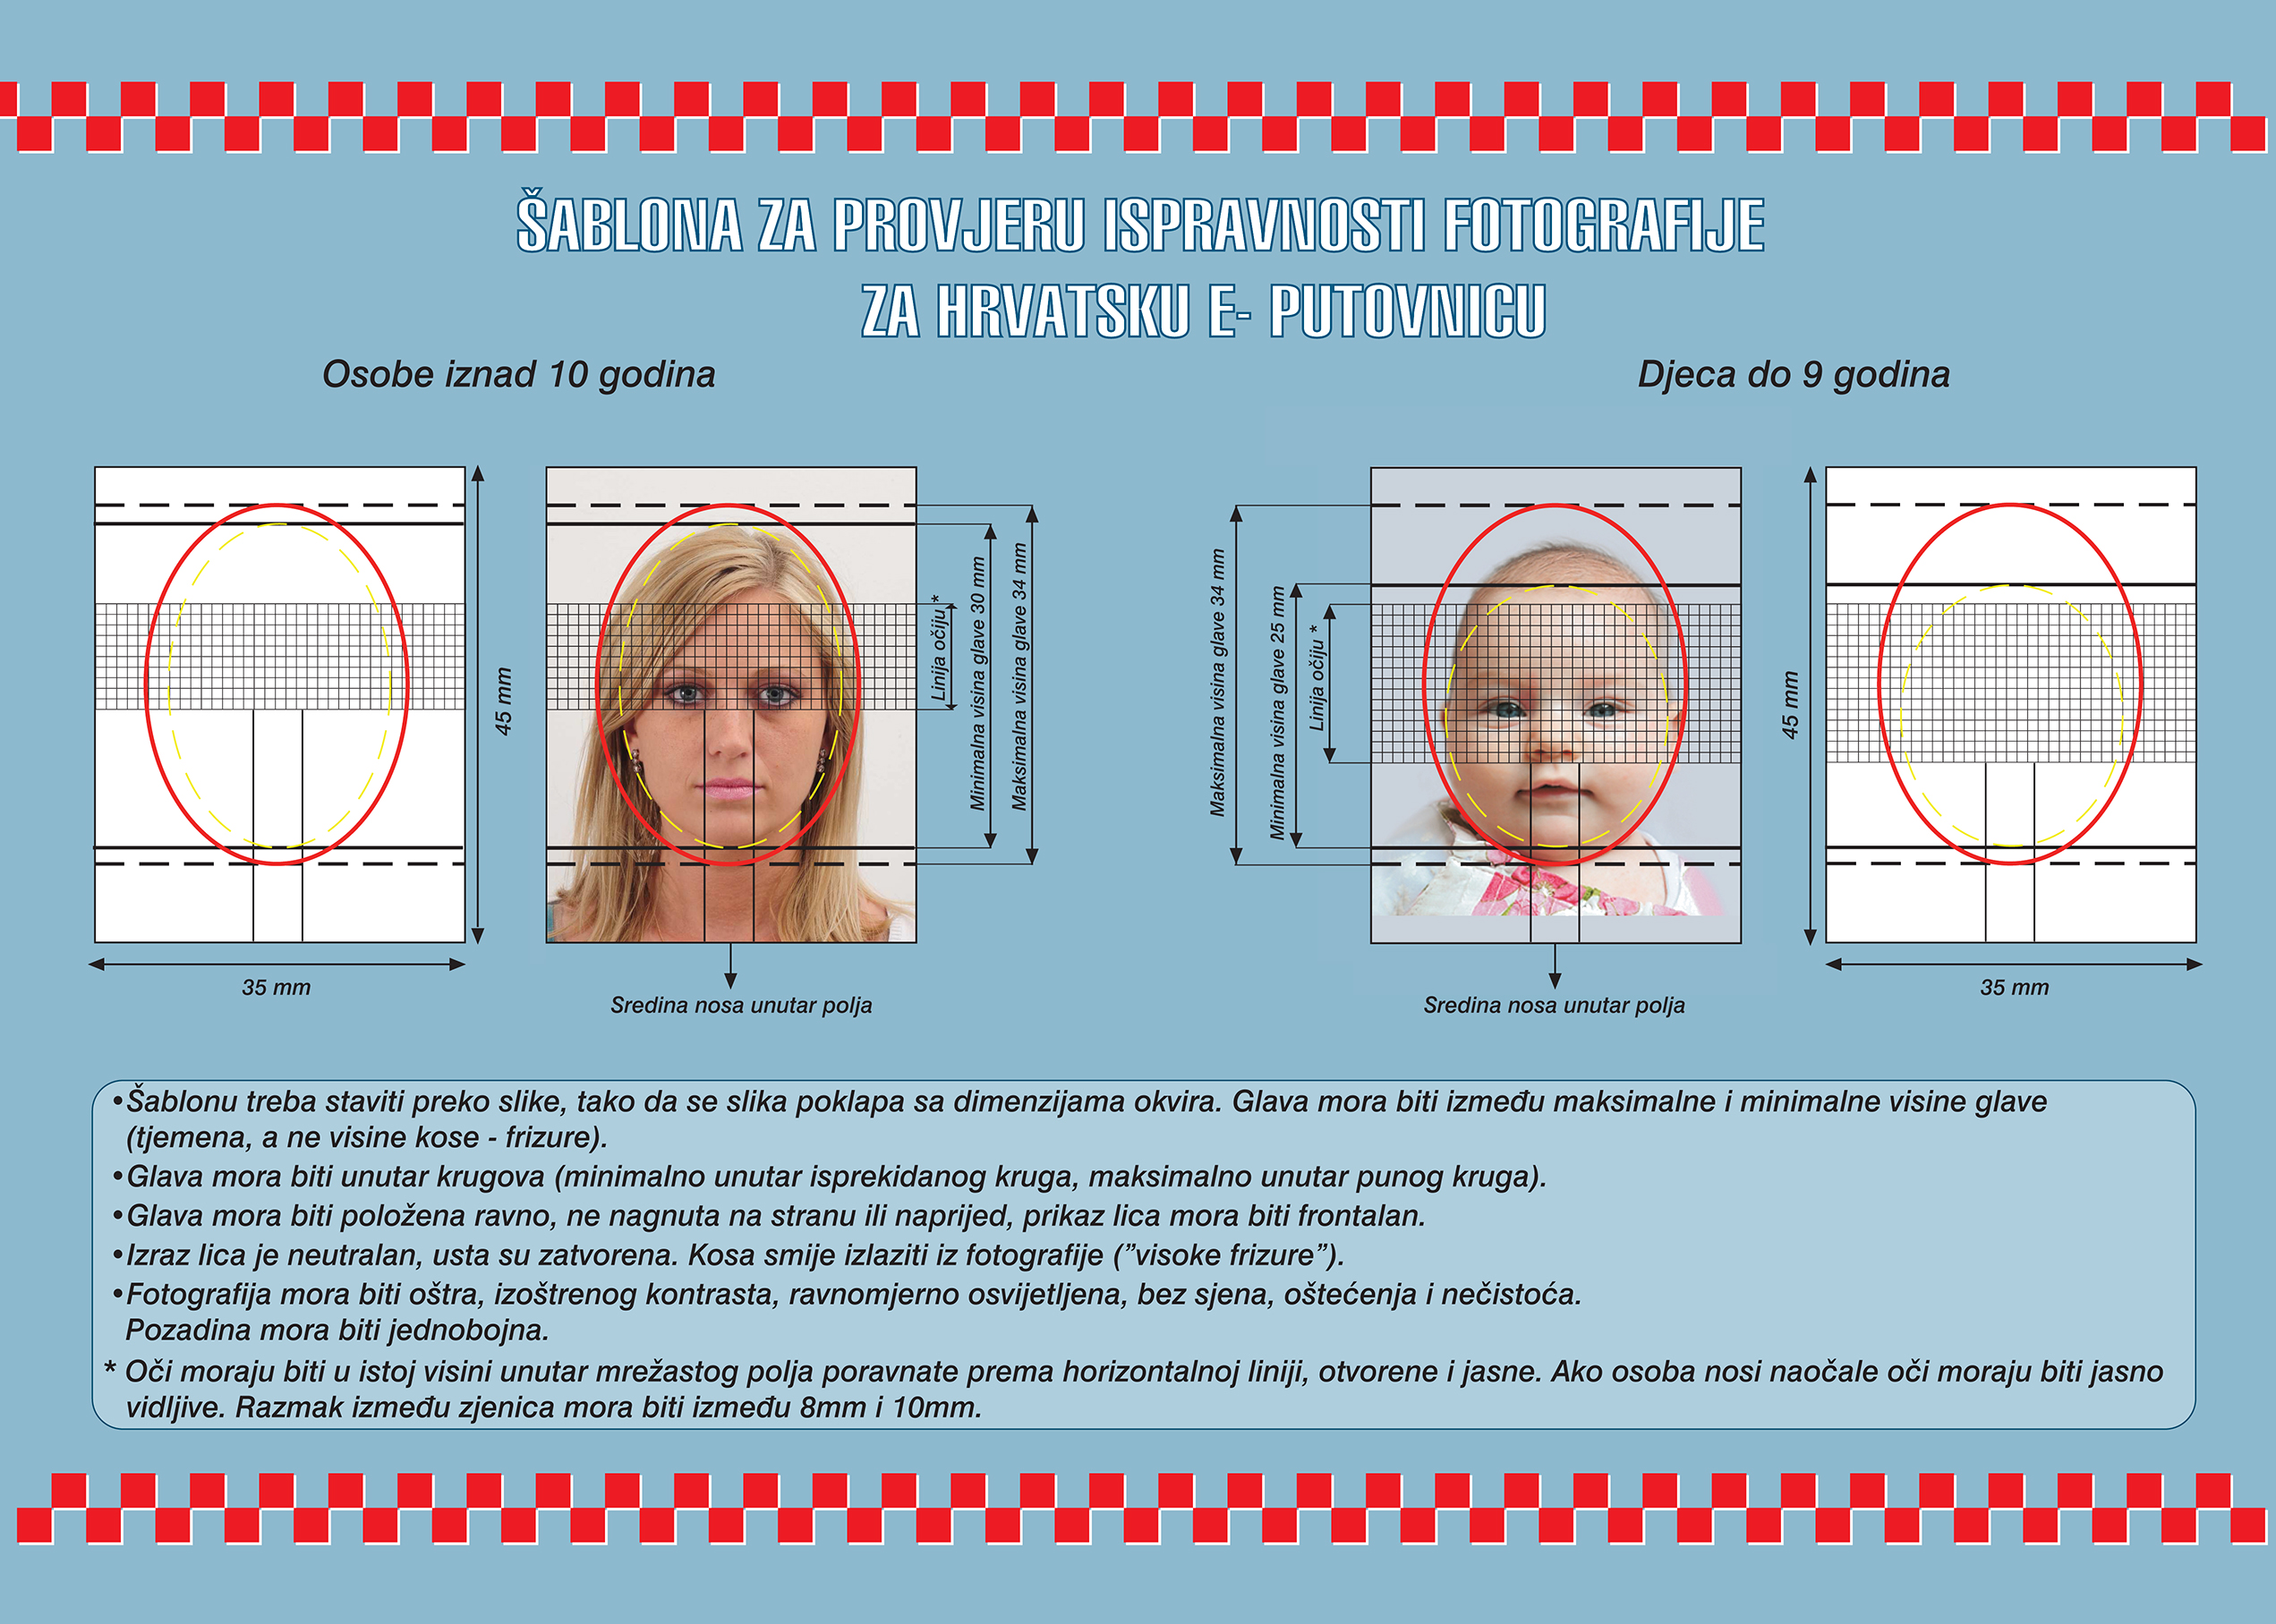 biometrisches passbild kroatien hrvatska